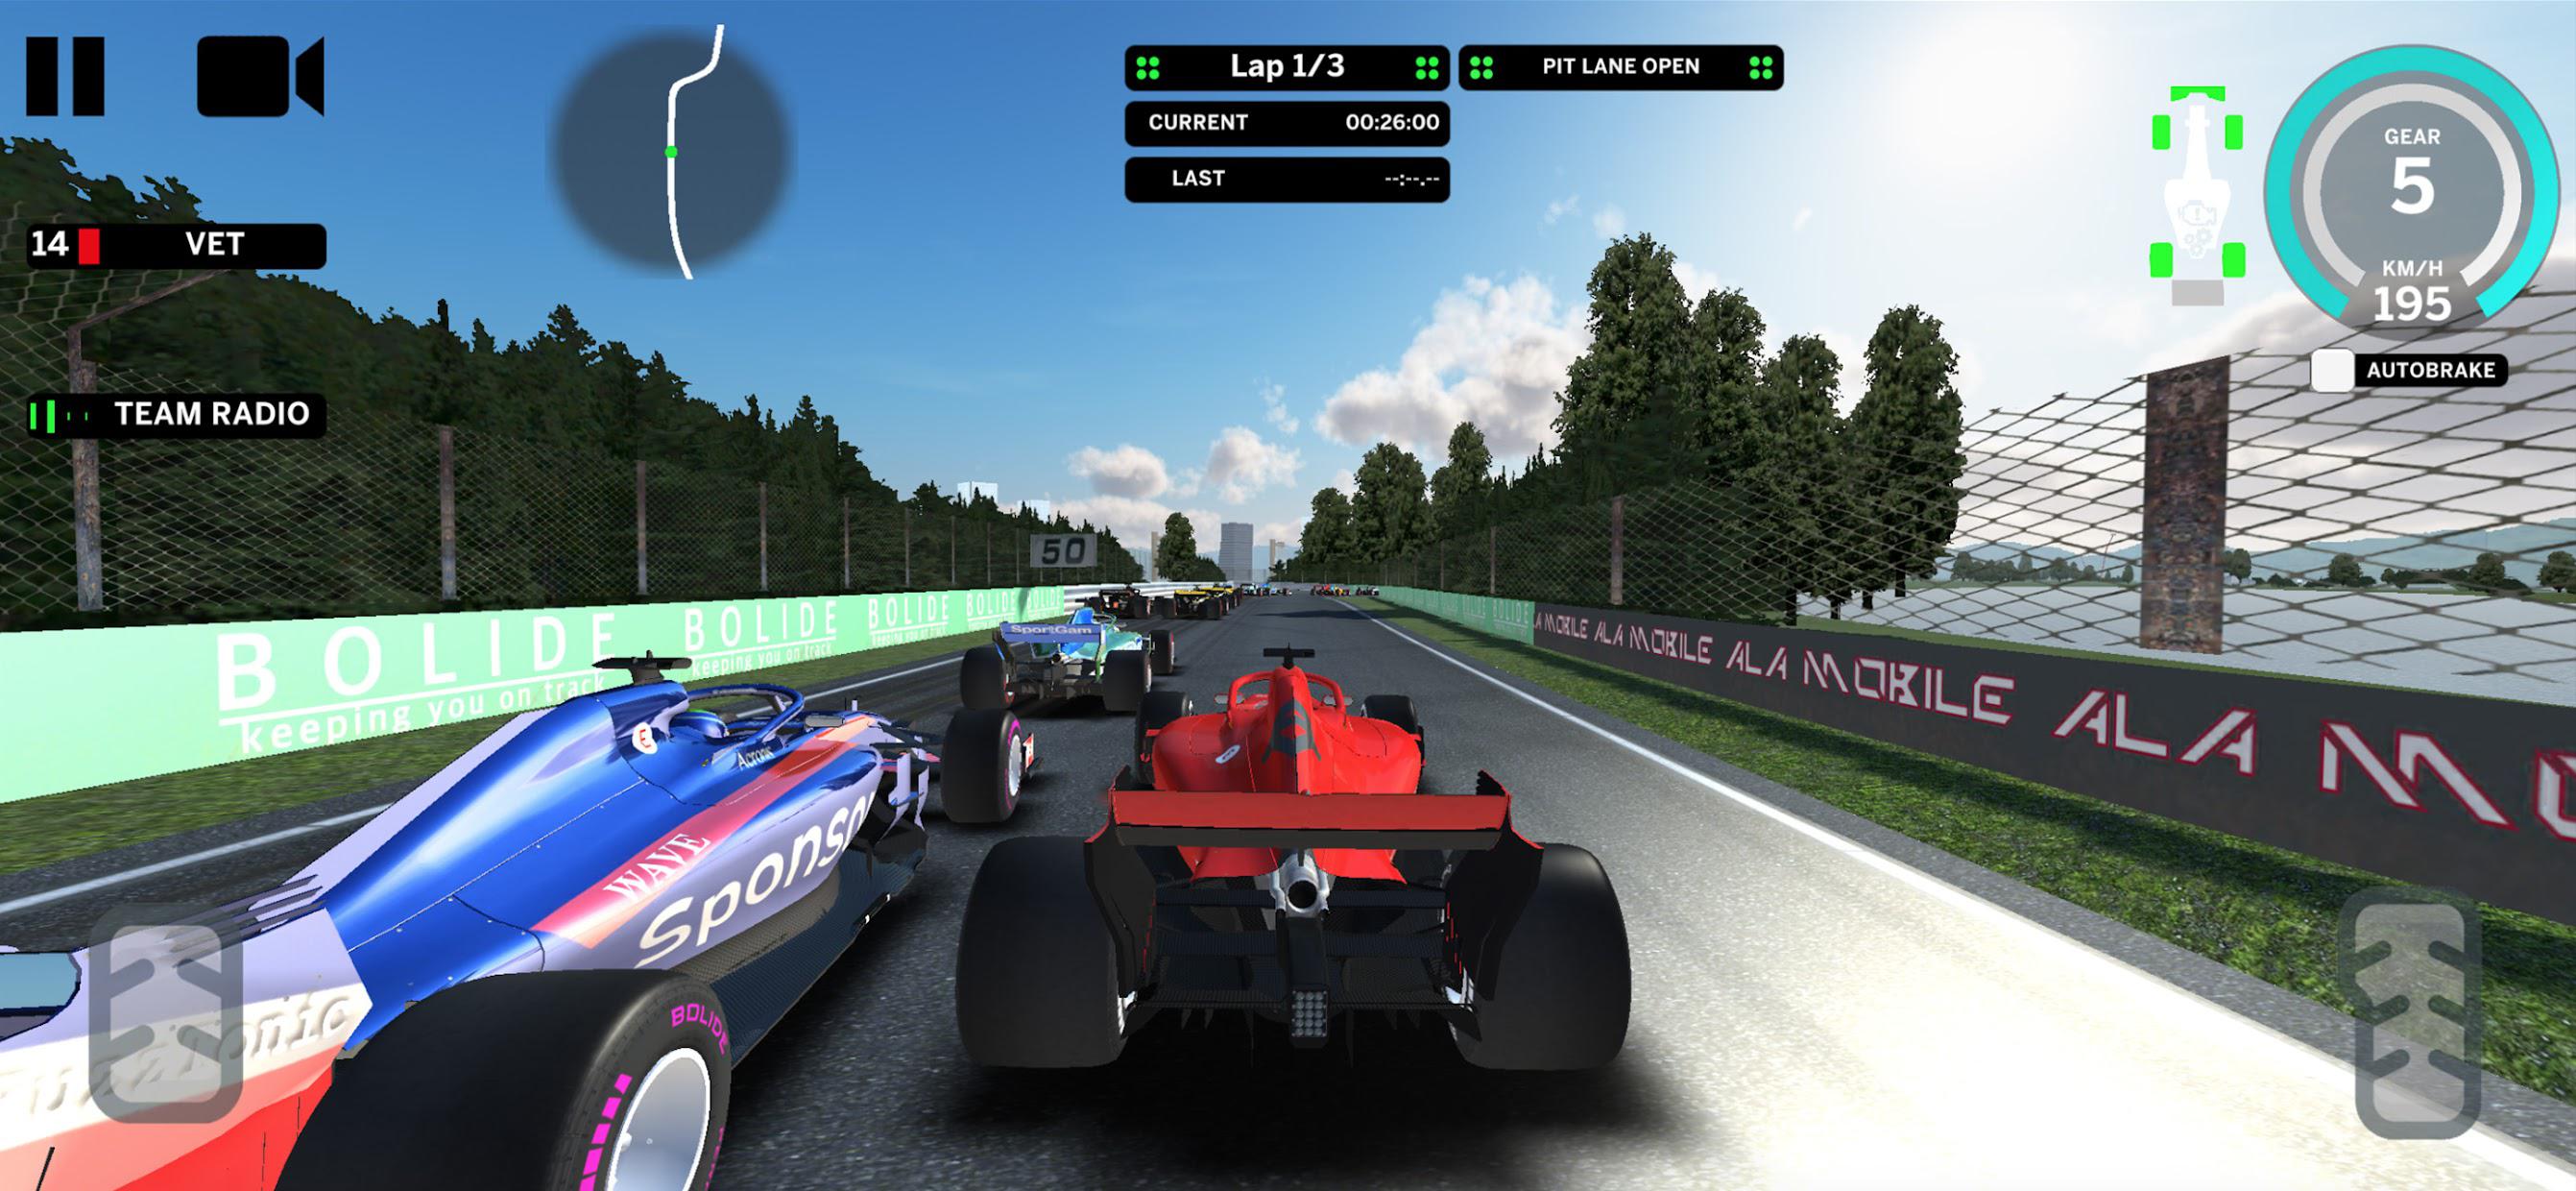 Ala Mobile GP - Formula cars racing_截图_2